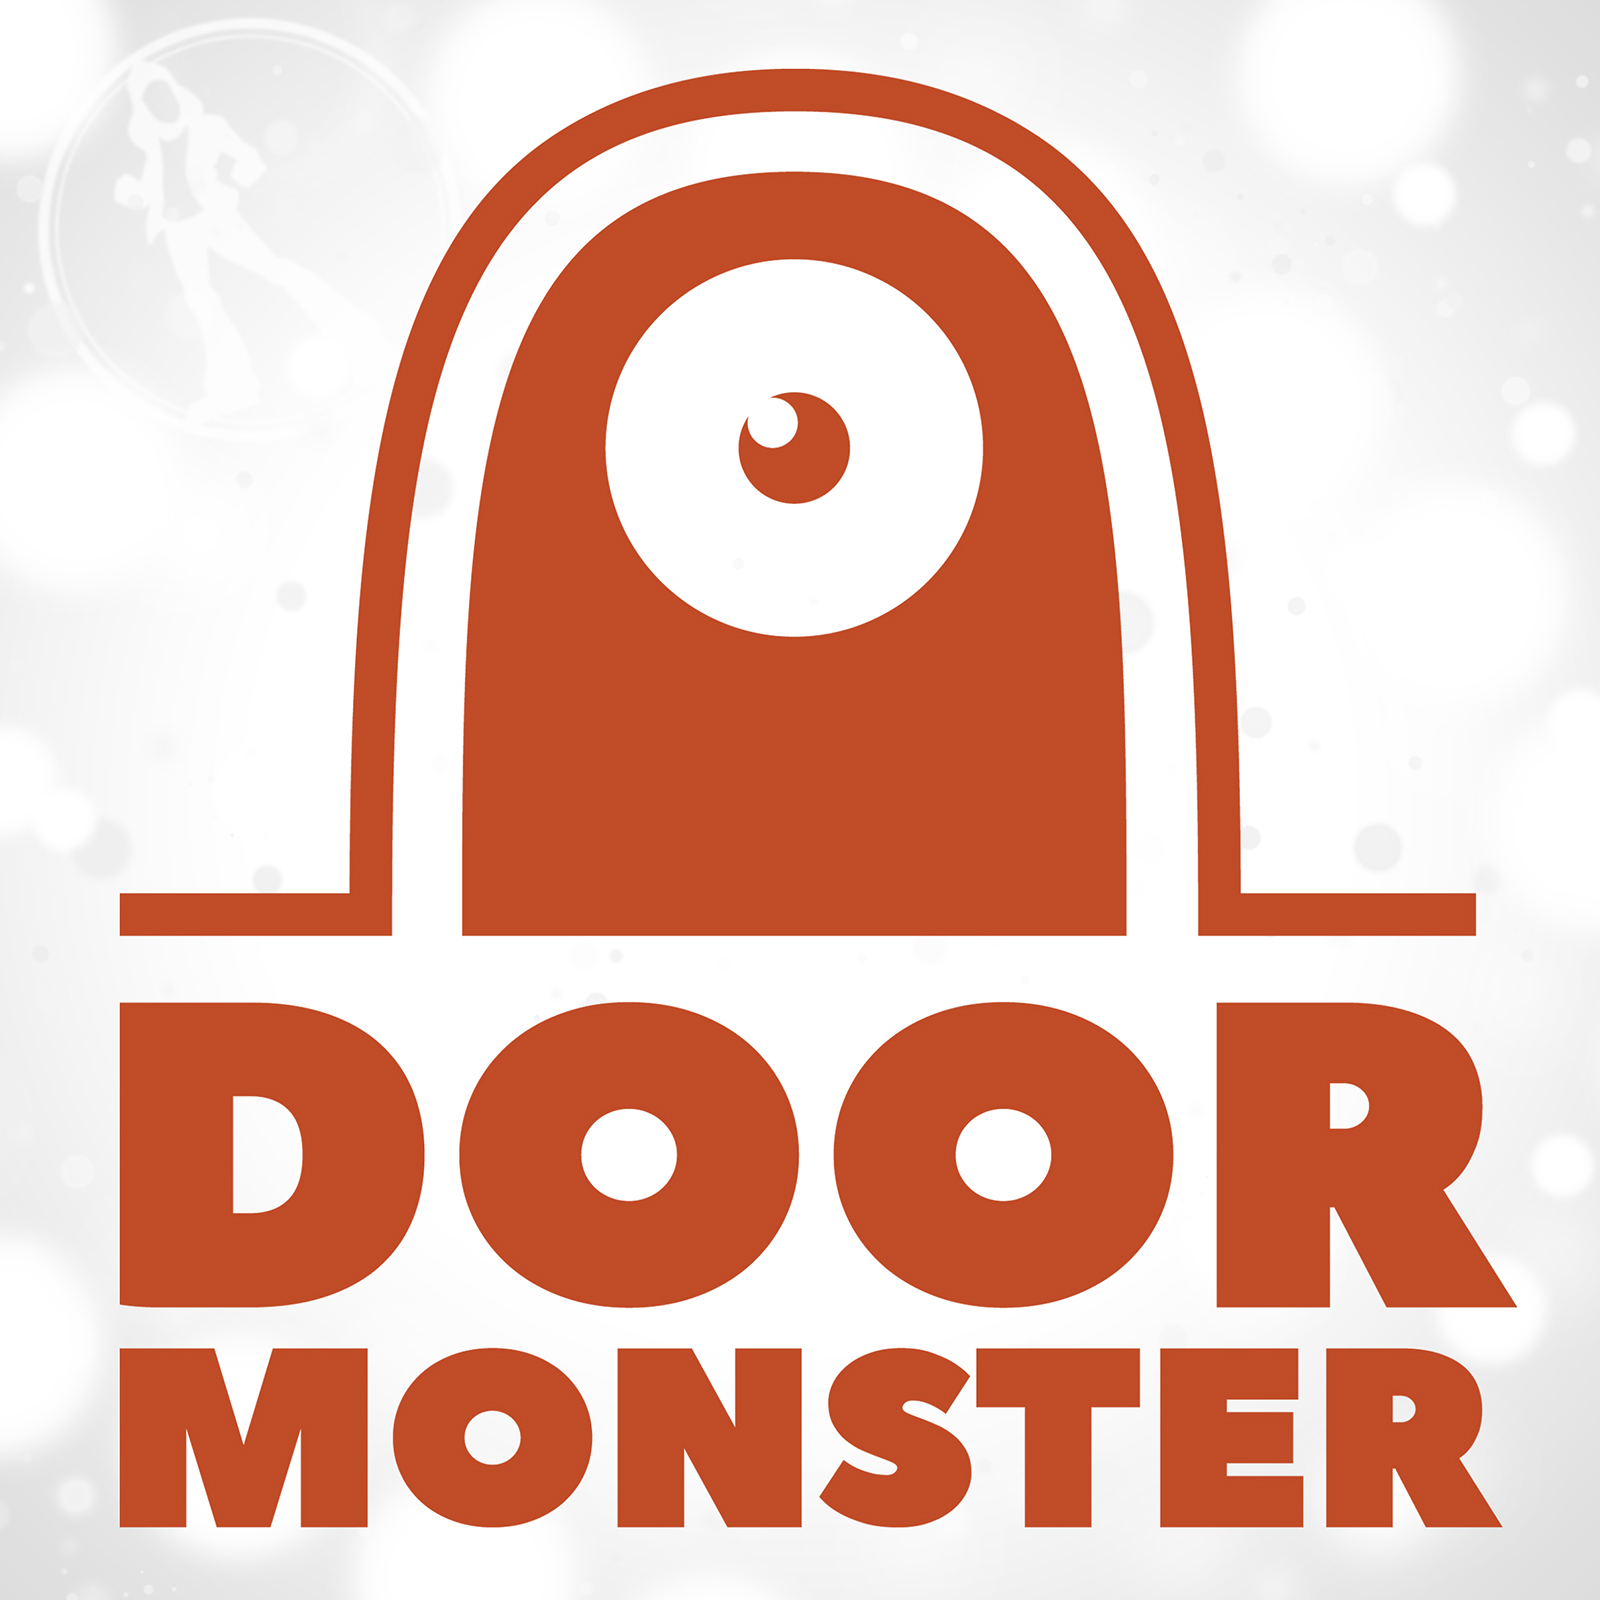 Door Monster